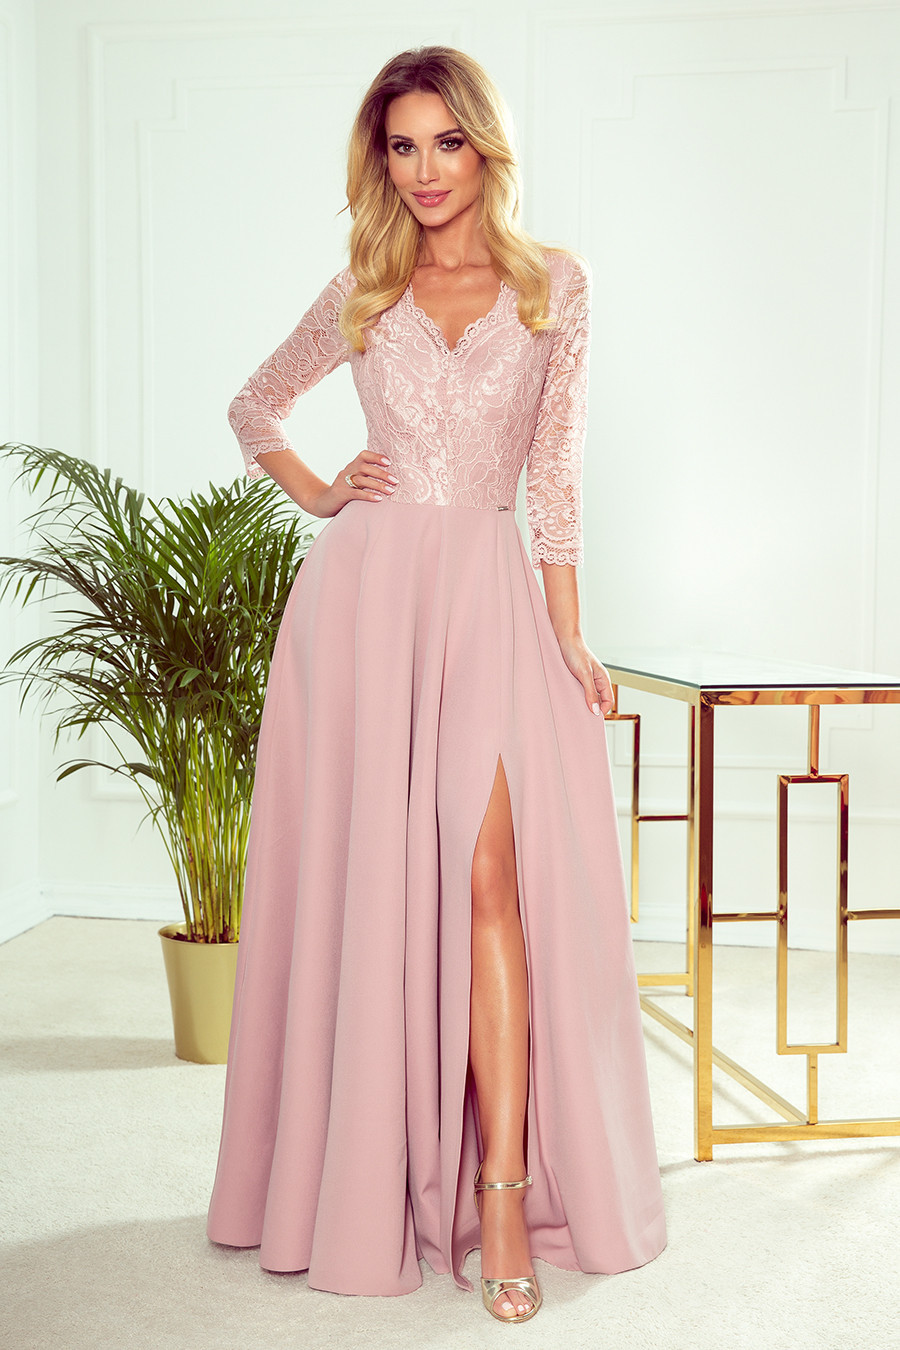 AMBER - Elegantní dlouhé krajkové dámské šaty v pudrově růžové barvě s dekoltem 309-4 XXL